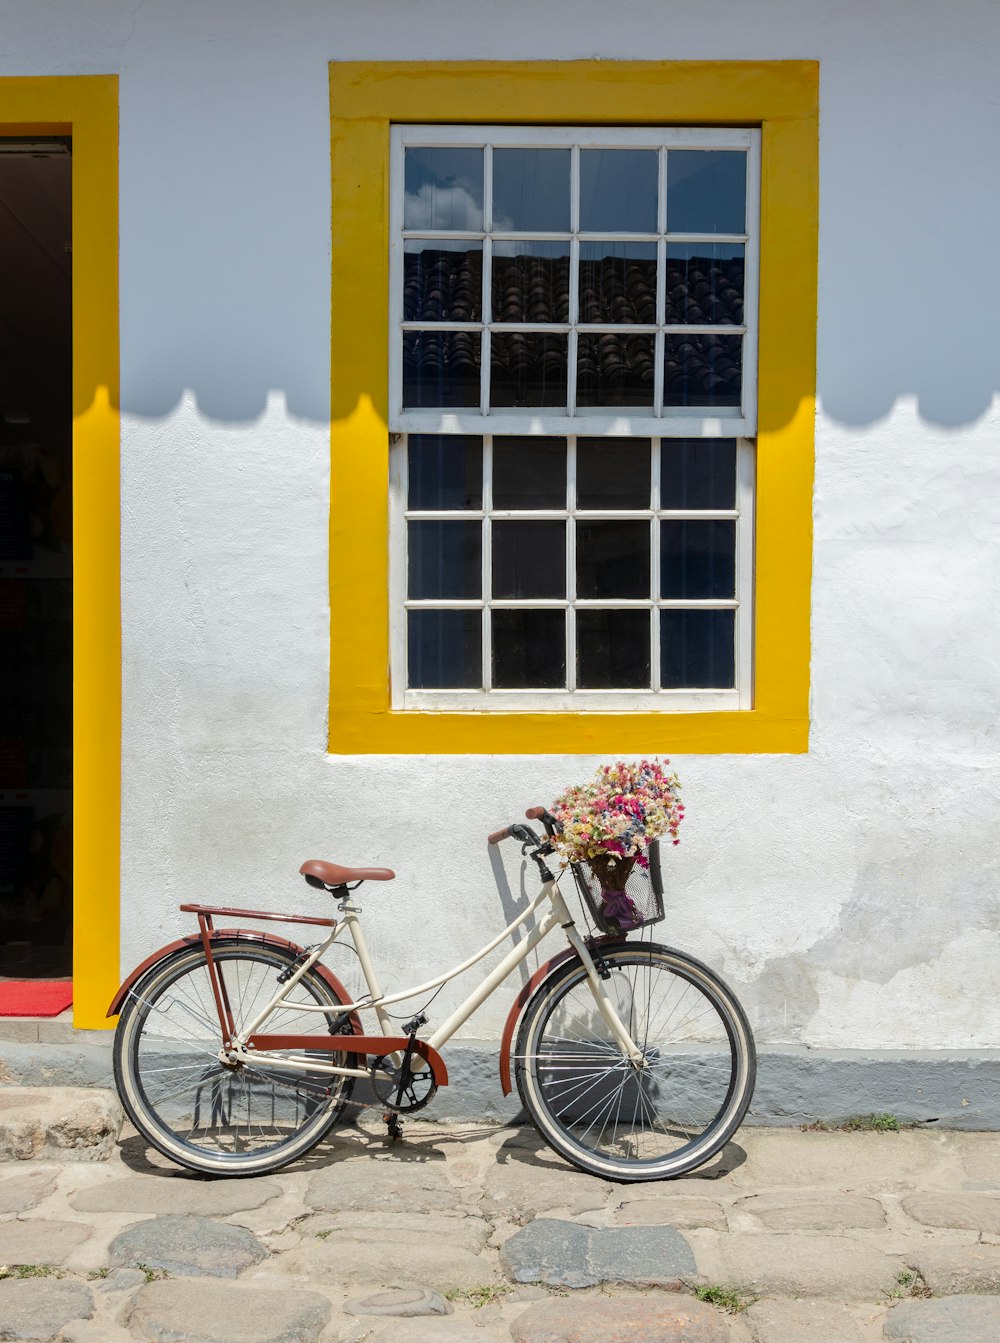 bici da città blu parcheggiata accanto al muro dipinto di giallo